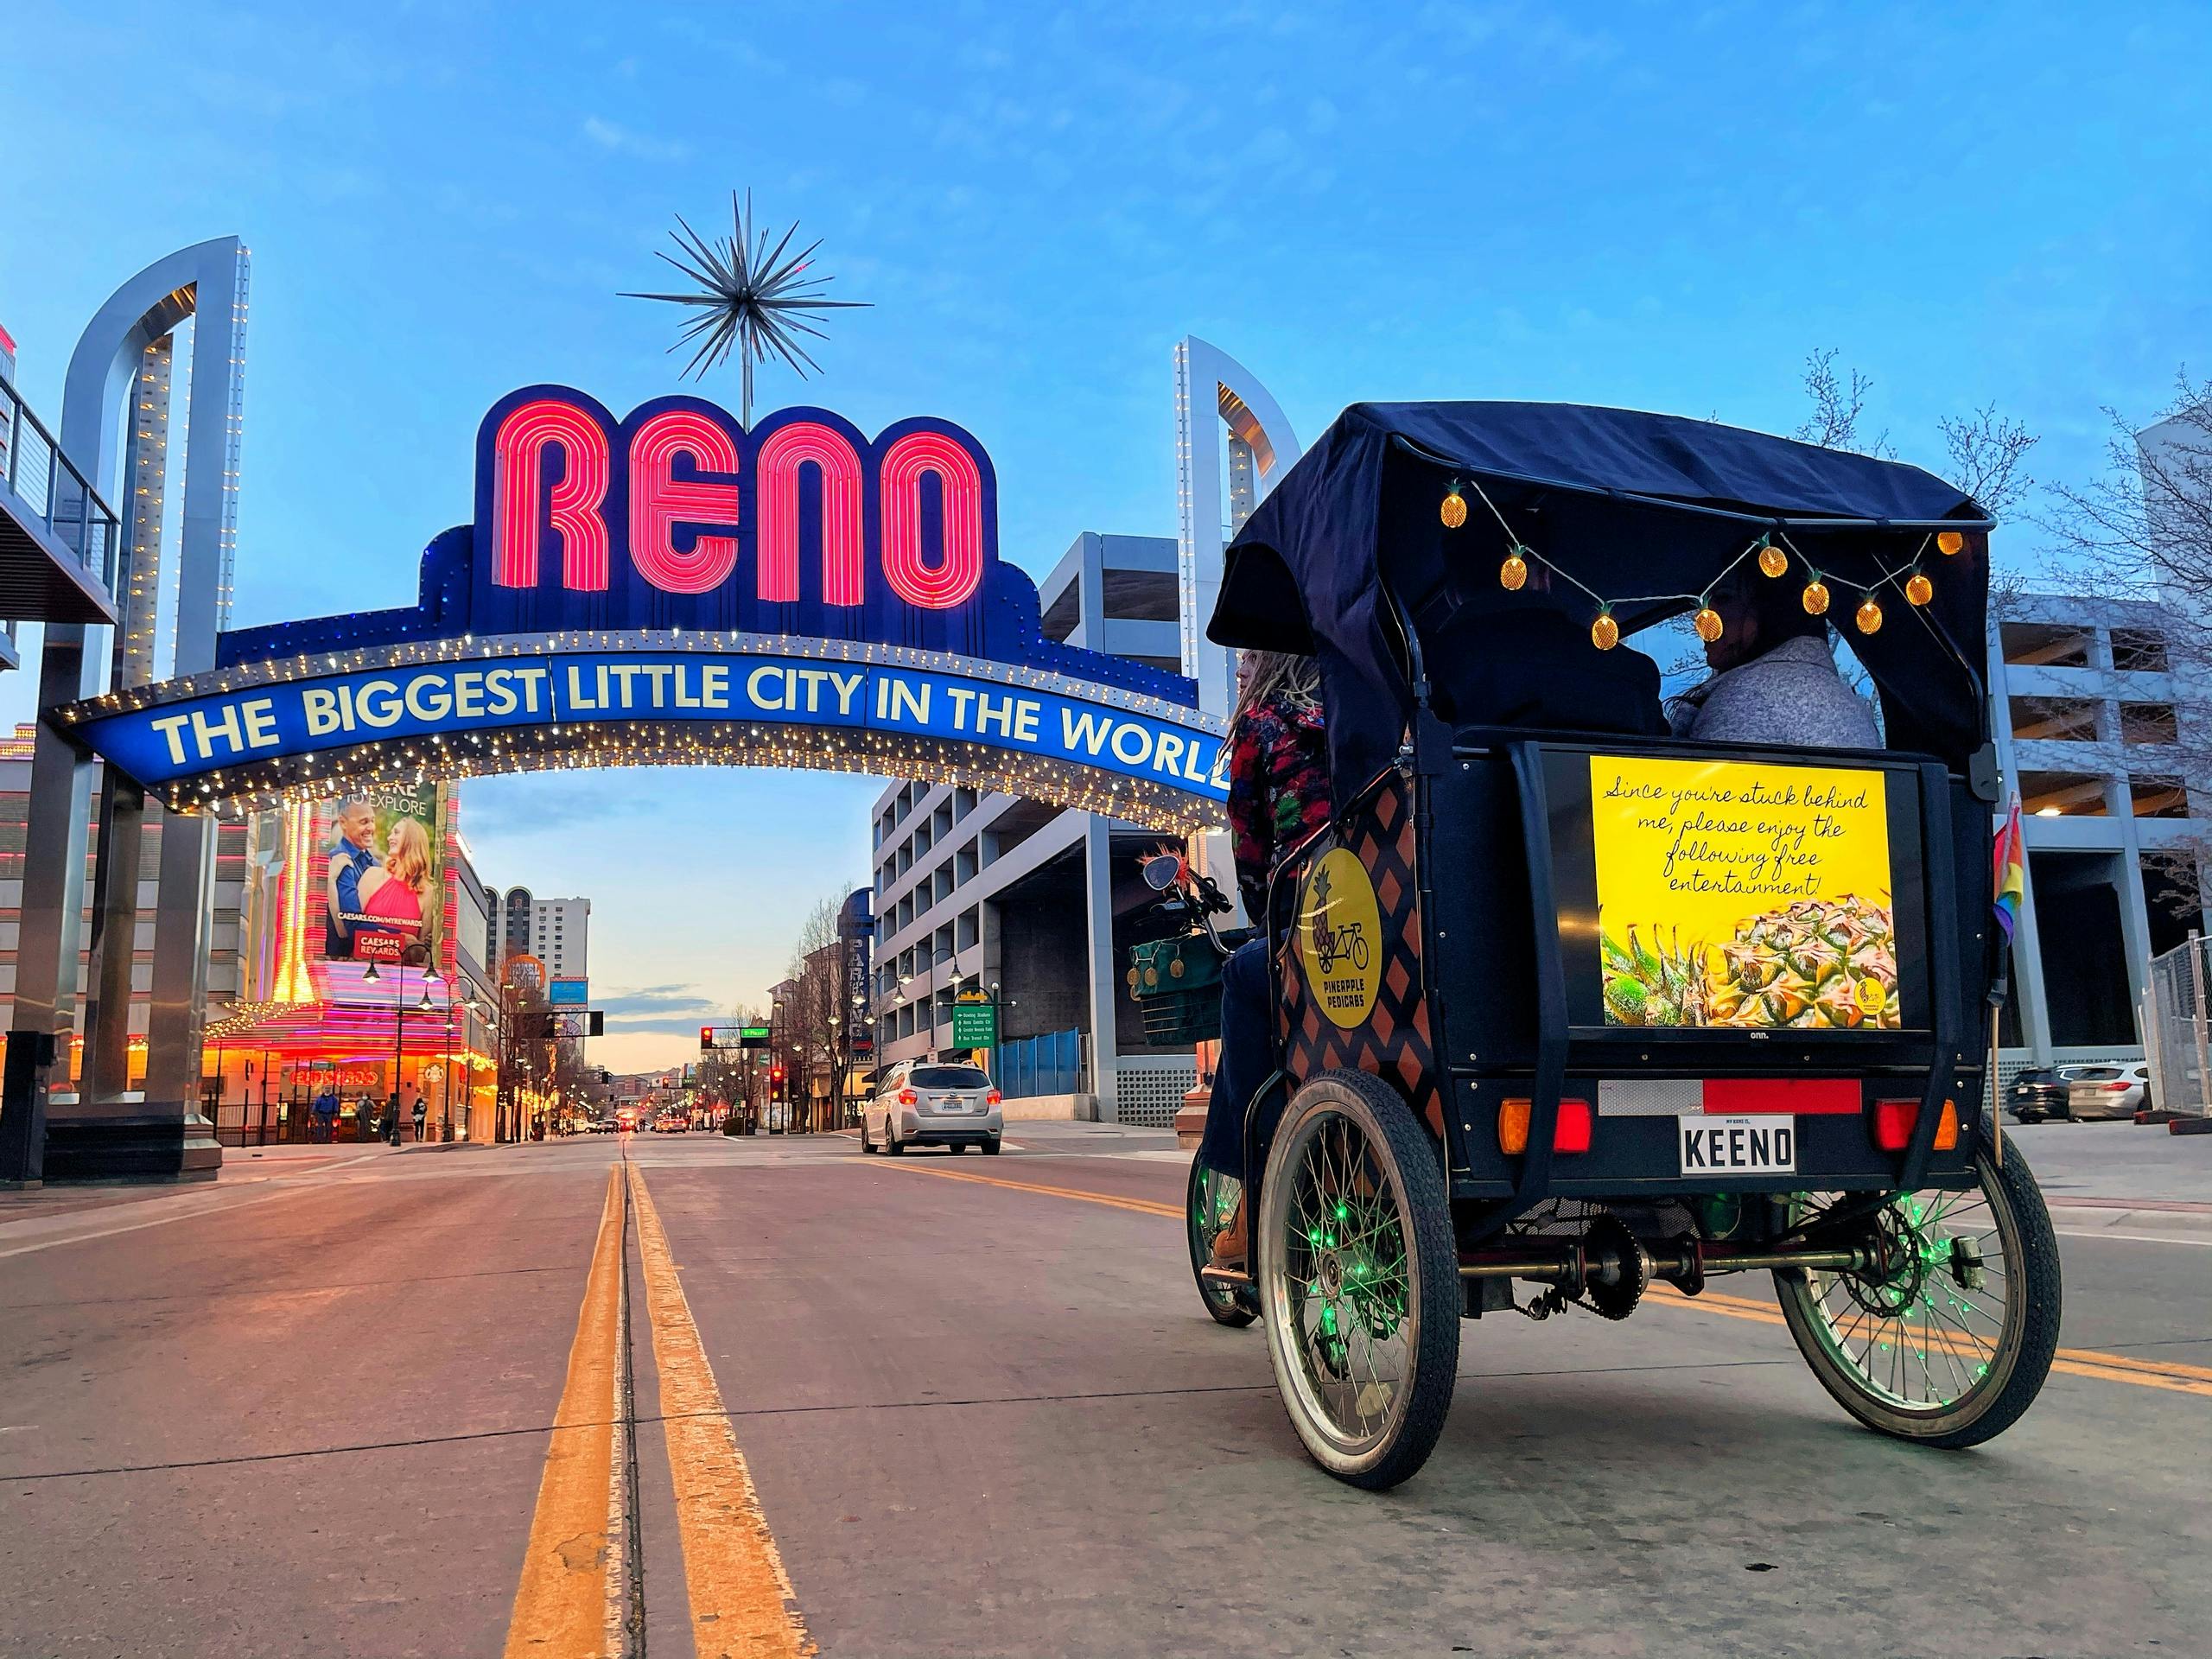 Wycieczka pedicabem po śródmieściu Reno